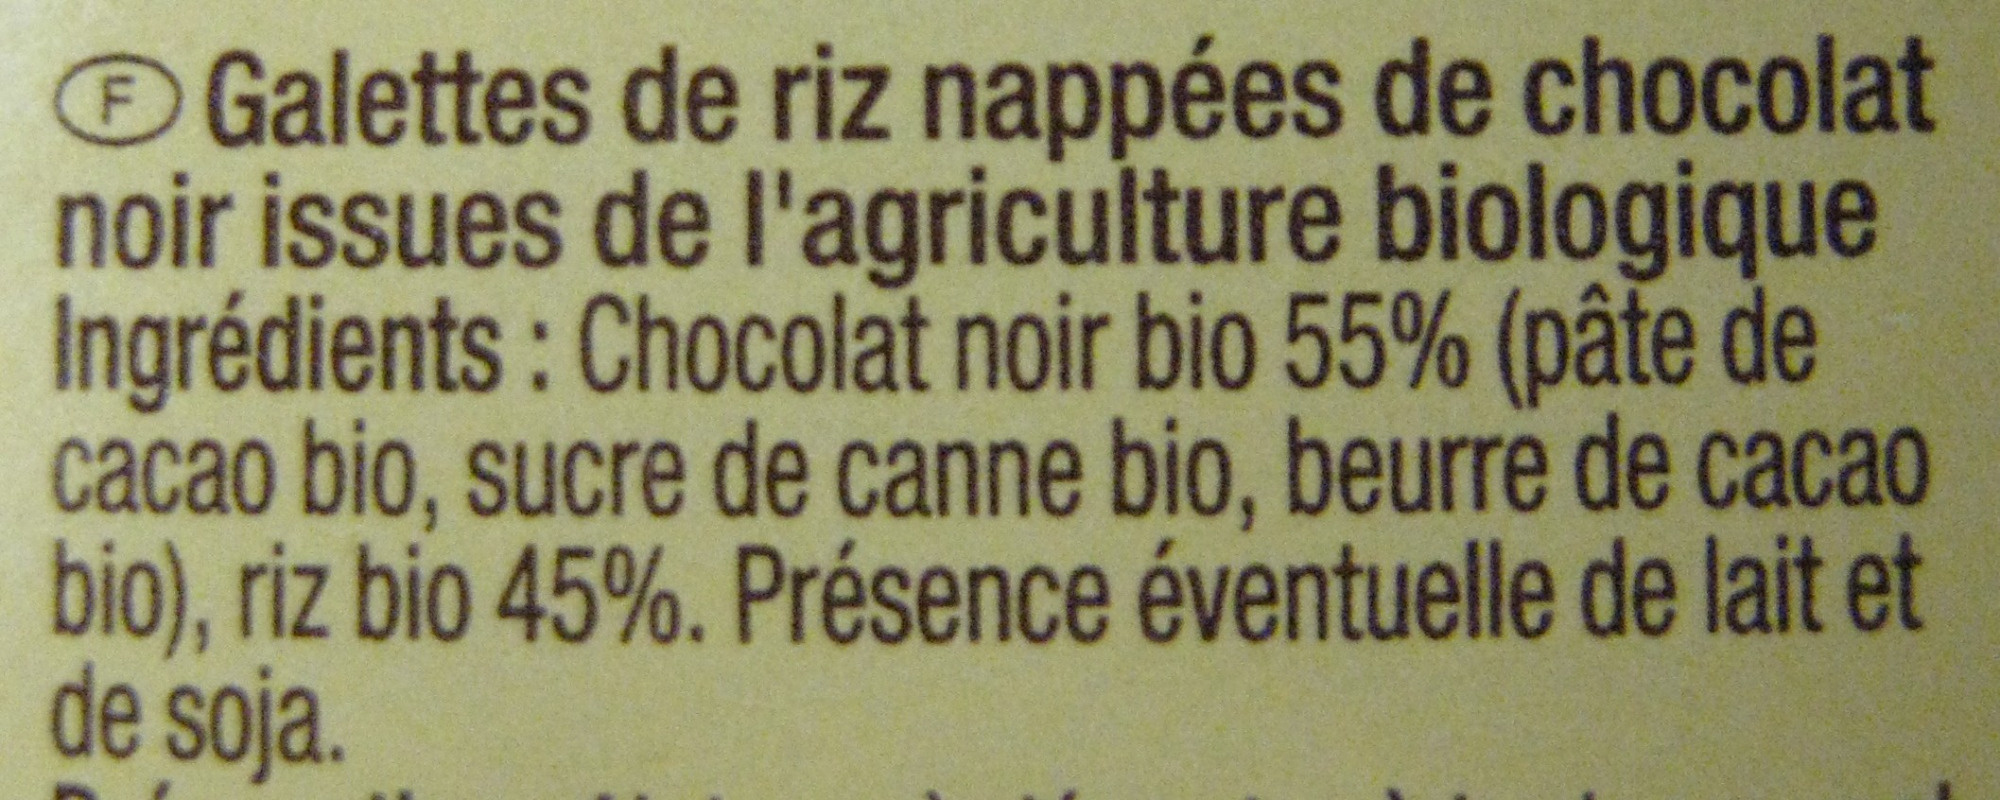 Galettes de riz nappées chocolat noir - Ingredients - fr